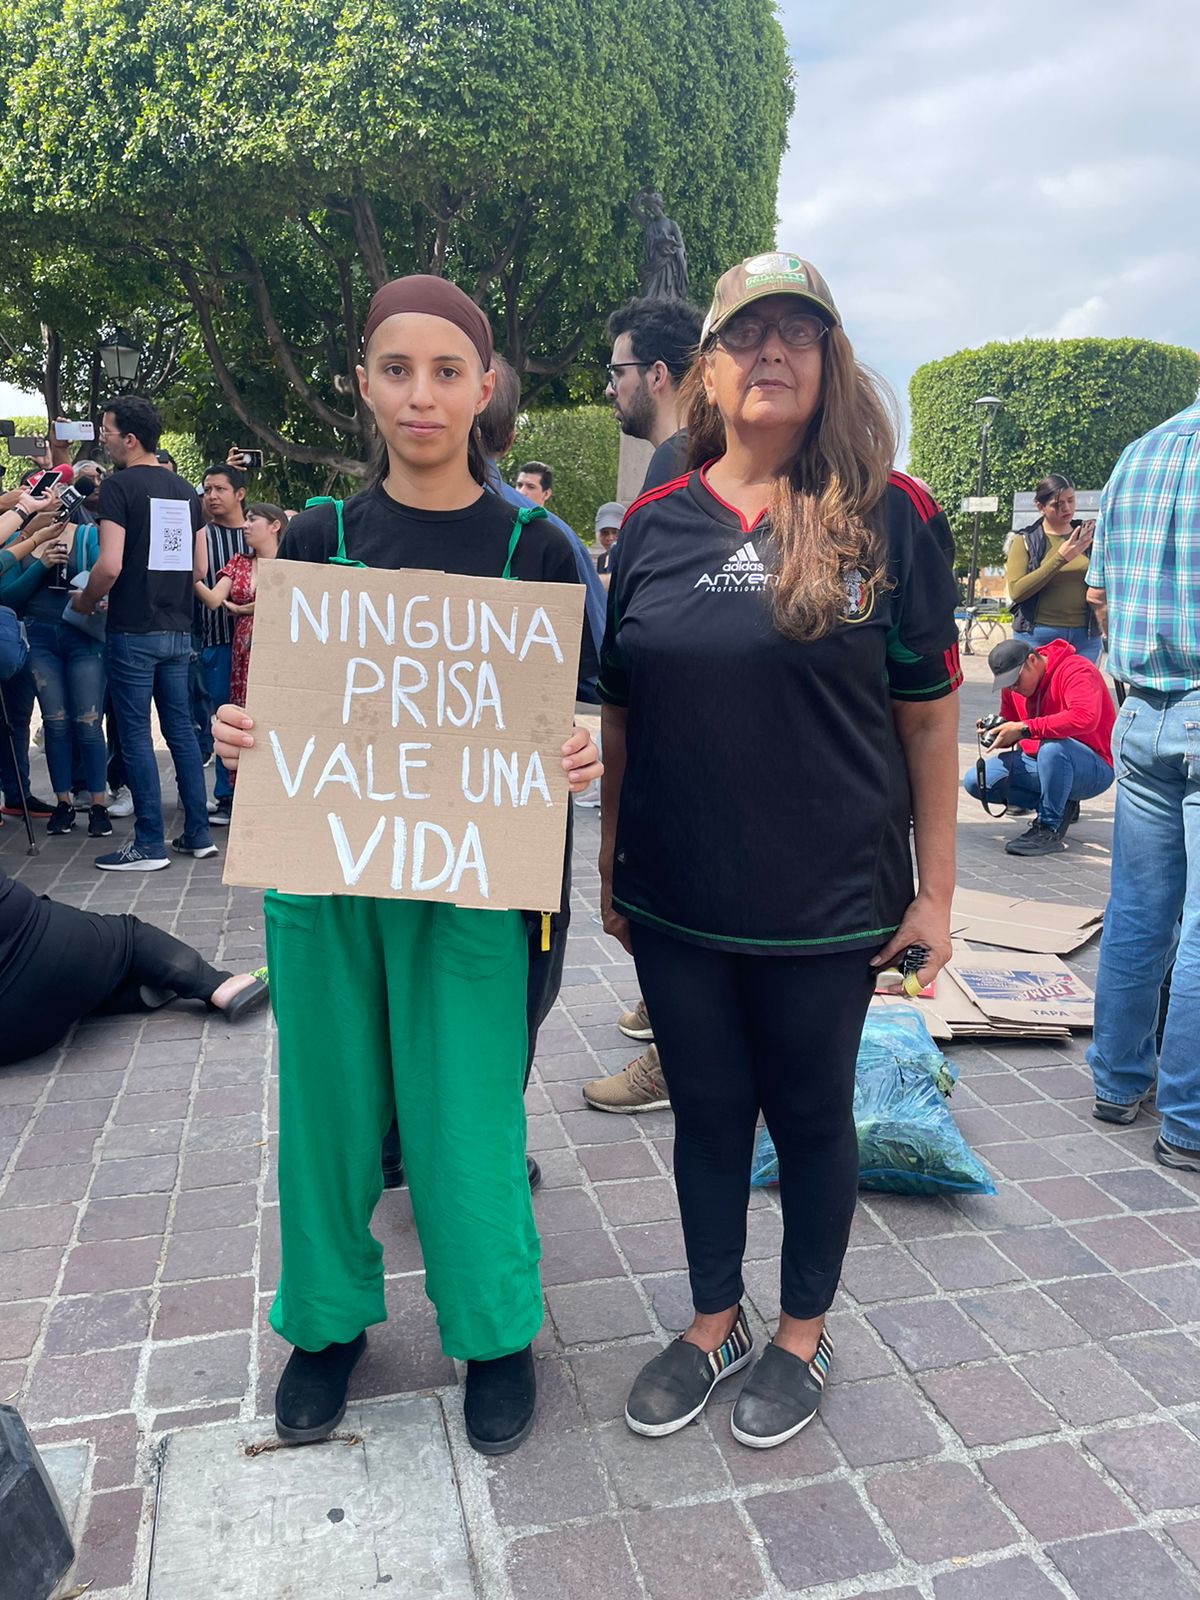 Margarita Sánchez participó en la protesta en representación de amigos y familiares. Crédito: Evlyn.Online